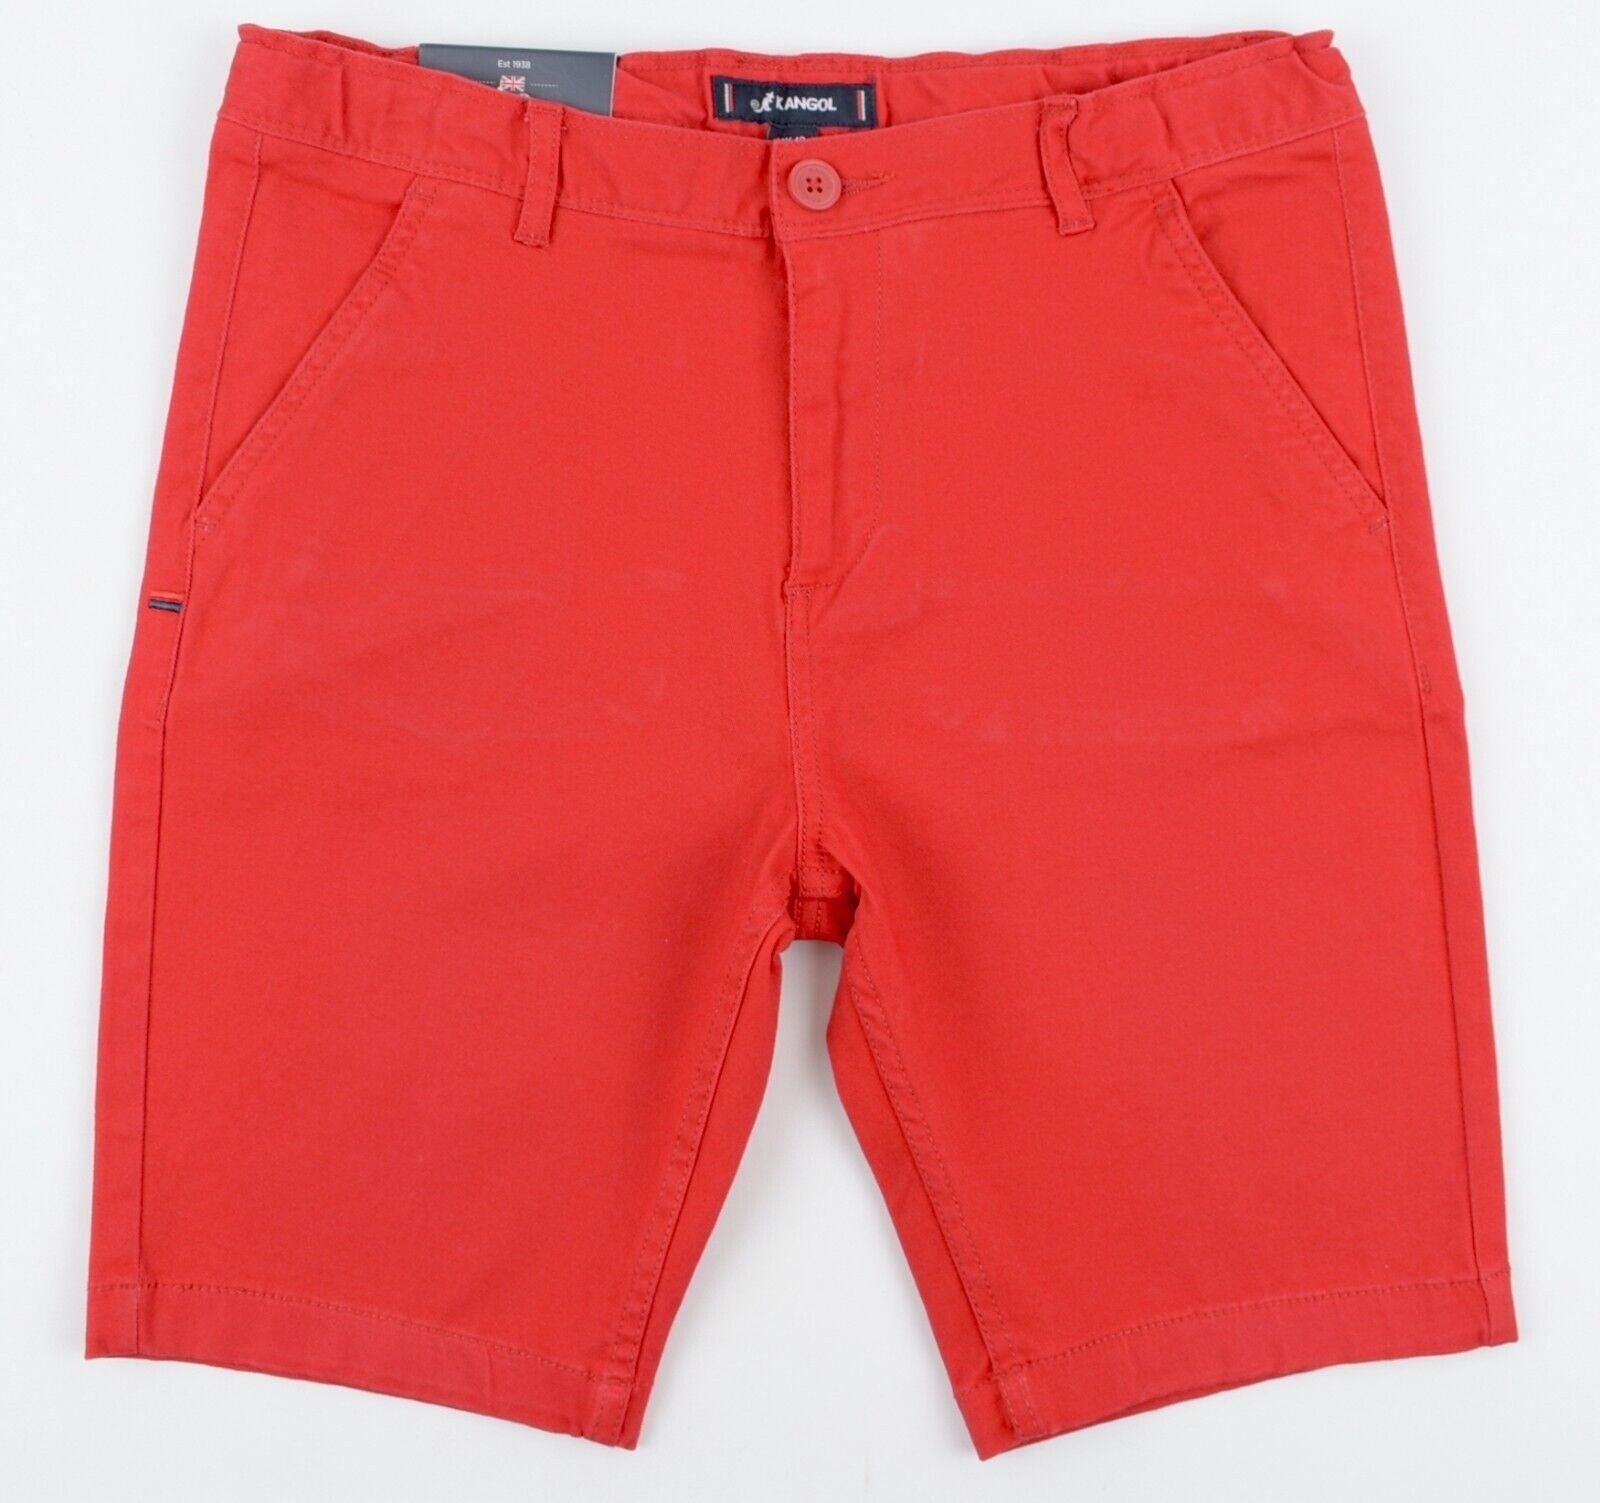 KANGOL Boys' Kids' Chino Shorts, Red, size 13 years